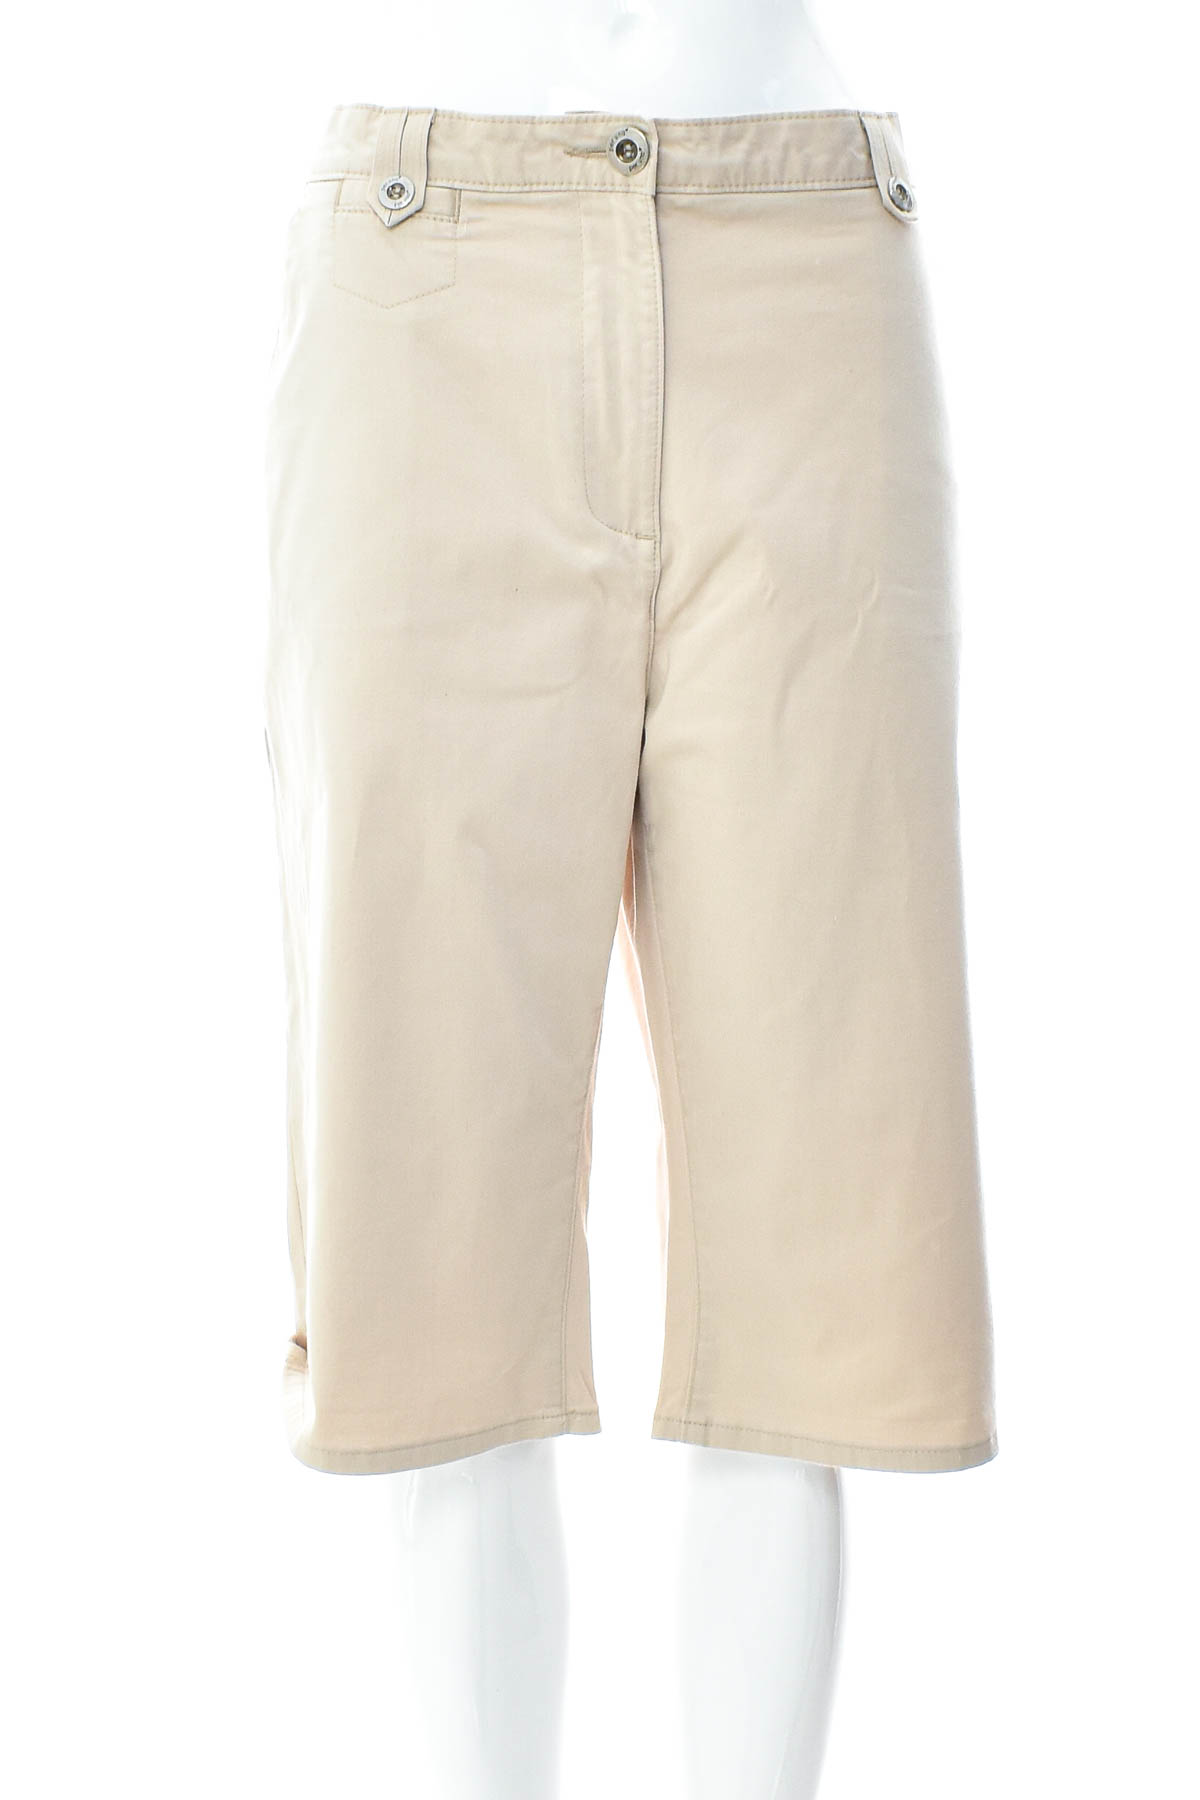 Krótkie spodnie damskie - PER UNA by M&S - 0